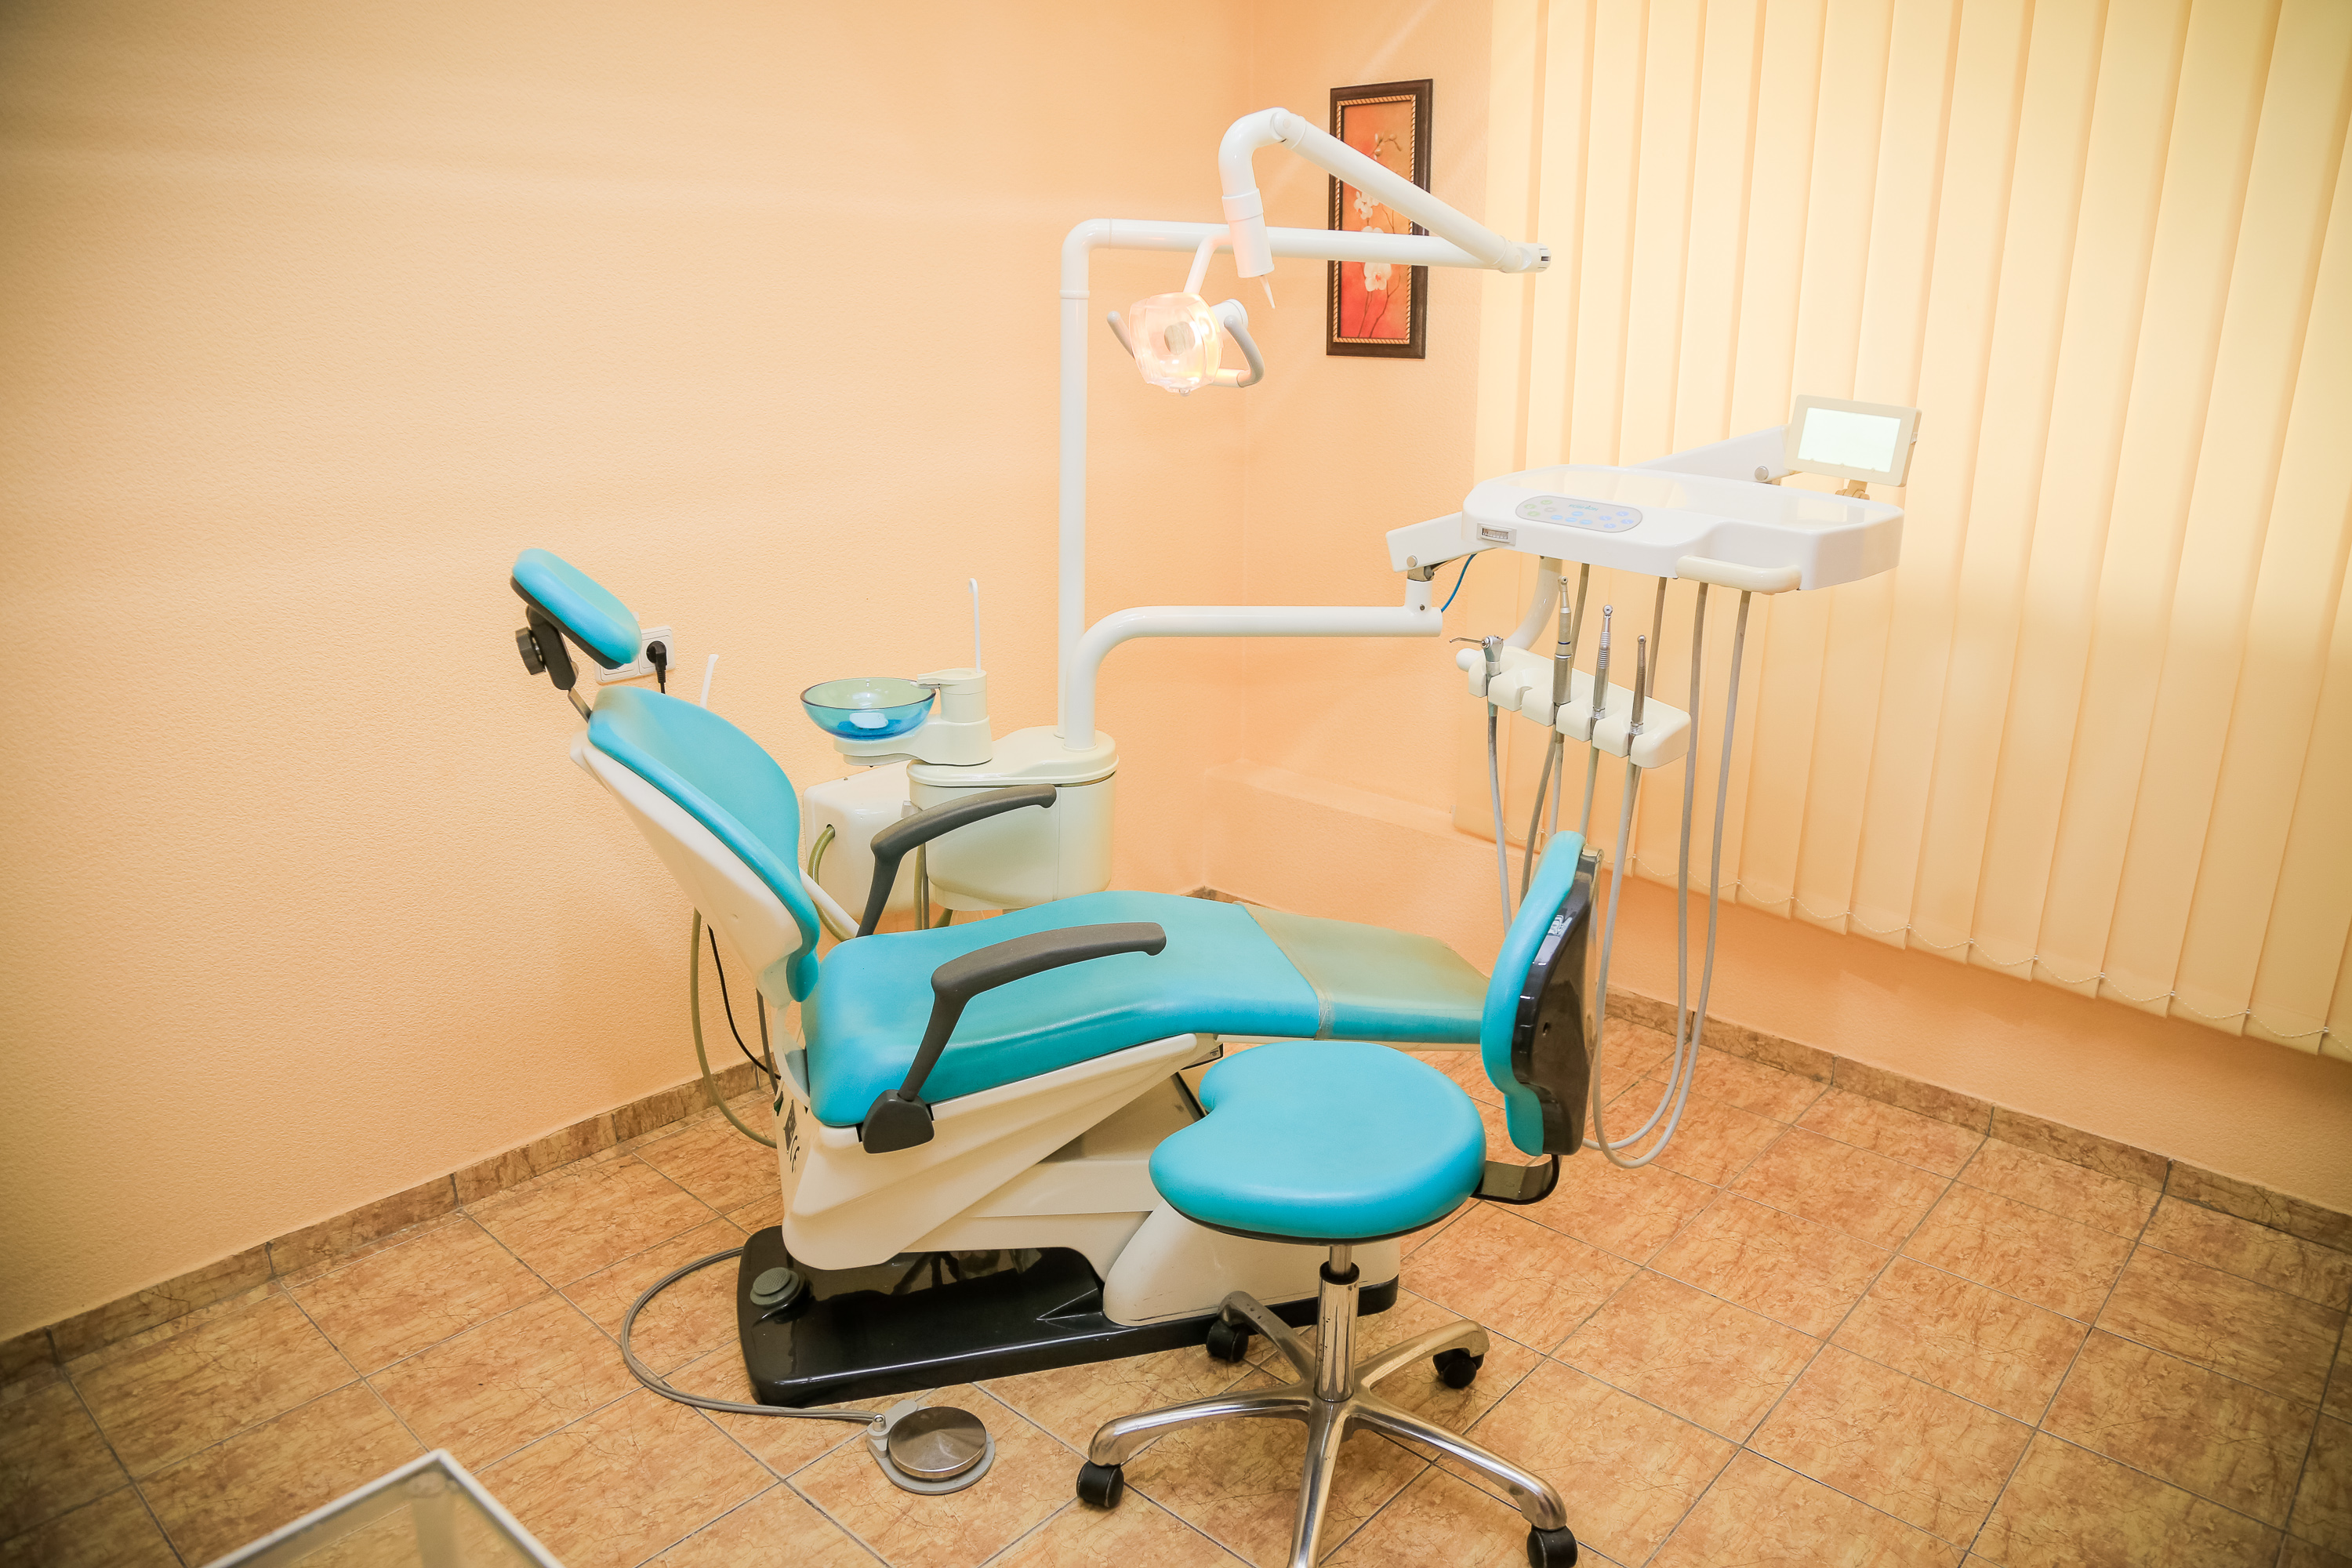 стоматологическое кресло, стоматология sident, sident, стоматологический кабинет одесская, стоматология харьков одесская, стоматология харьков, клиника sident,